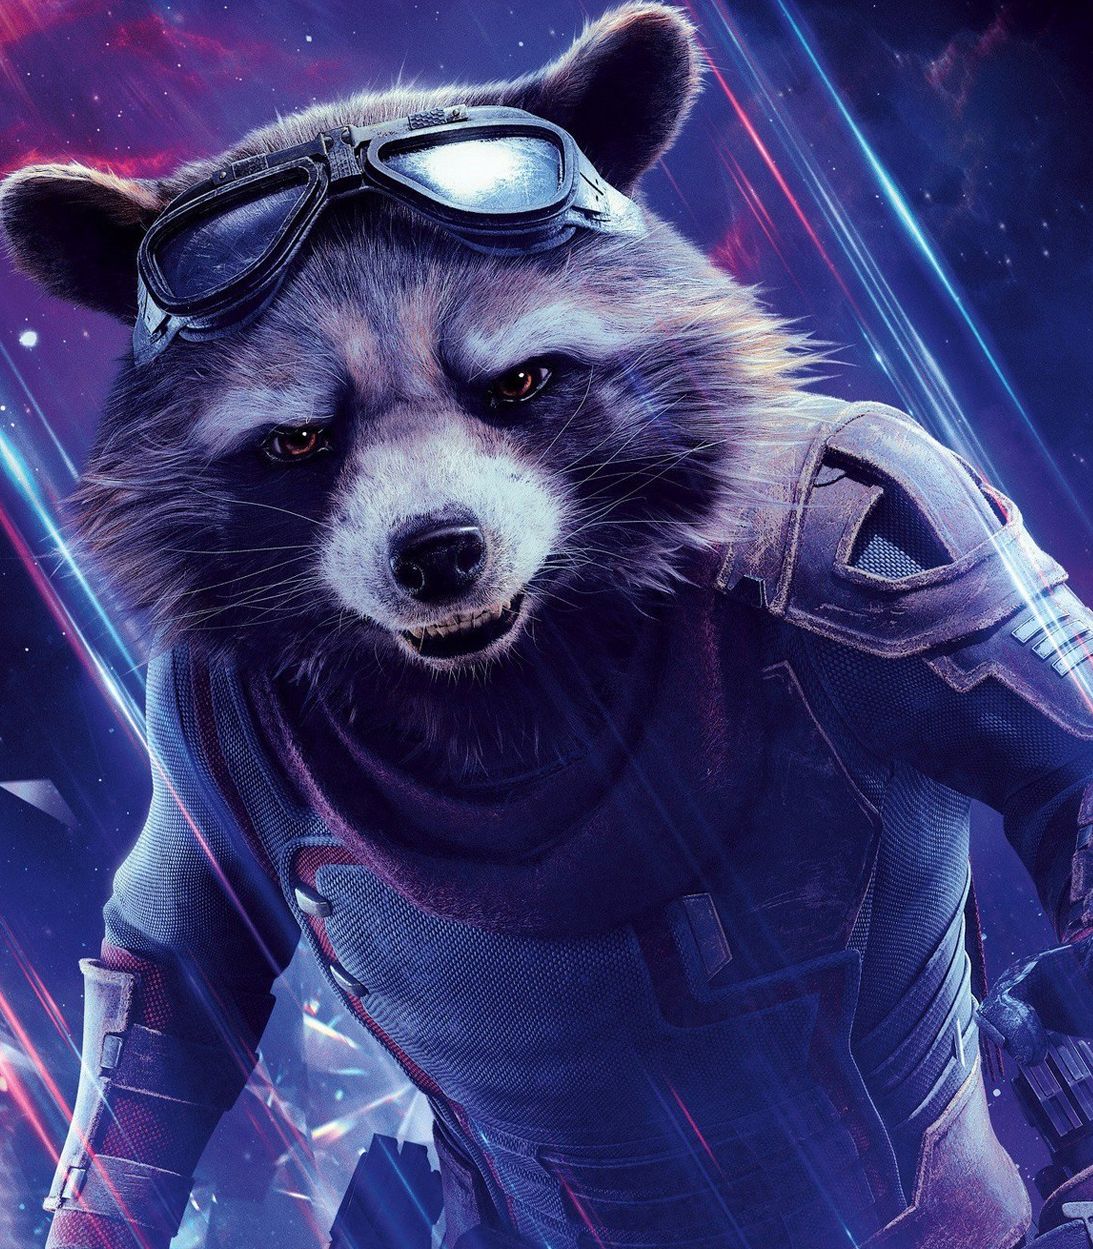 Rocket Raccoon in Avengers Endgame